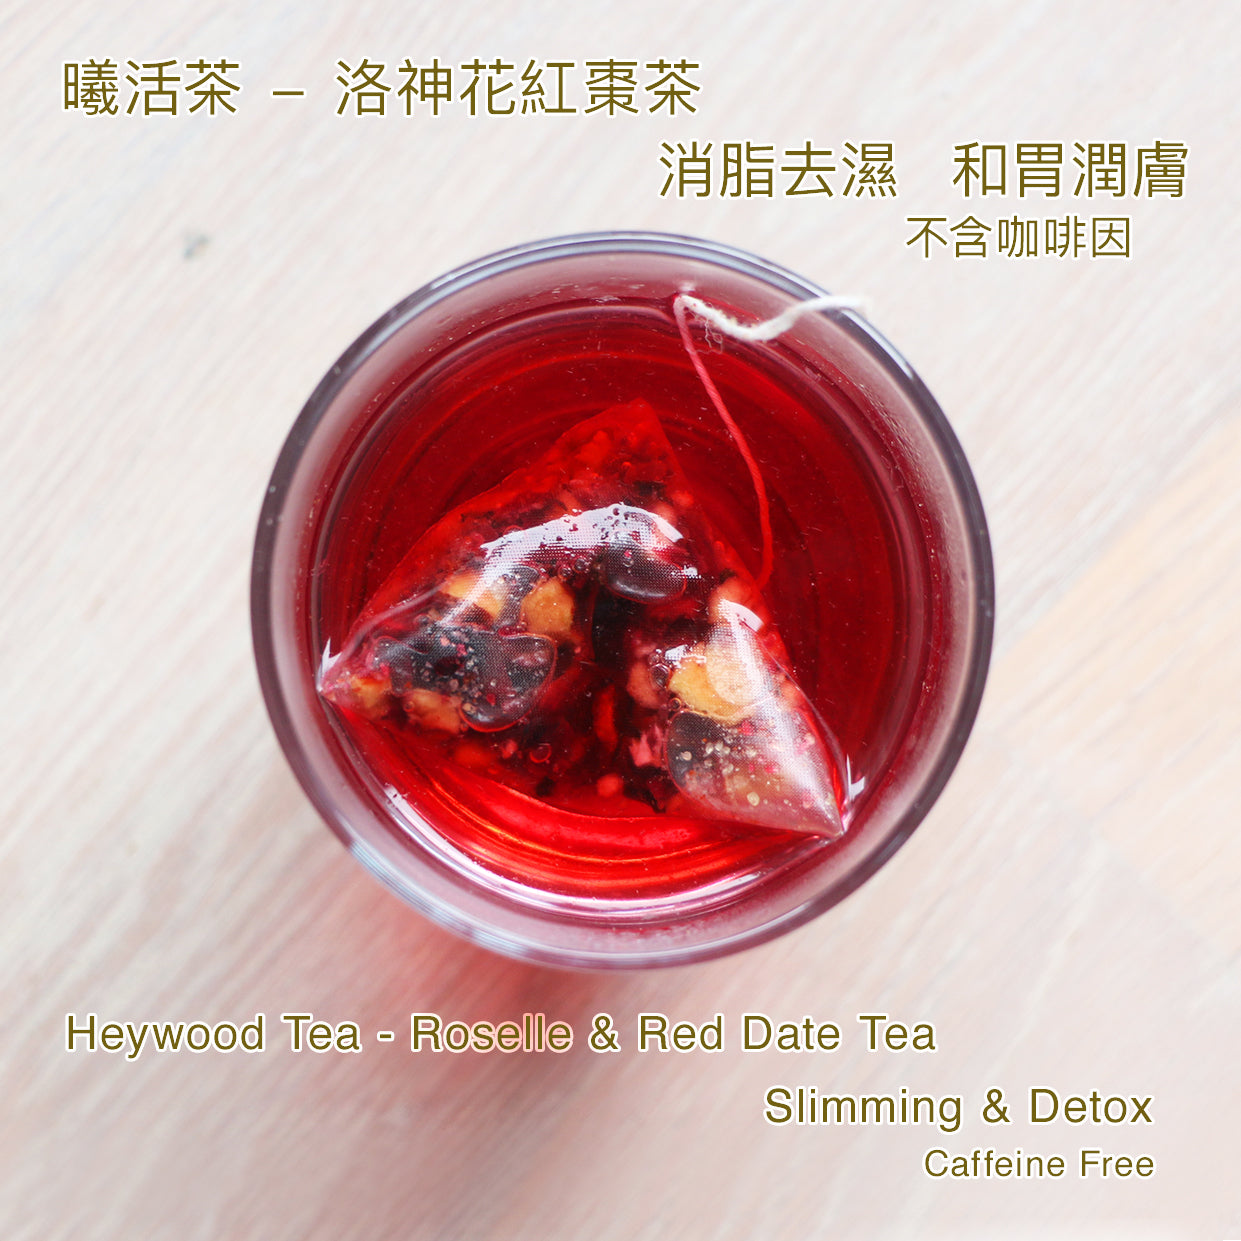 Heywood Tea Roselle & Red Date Tea 洛神花紅棗茶